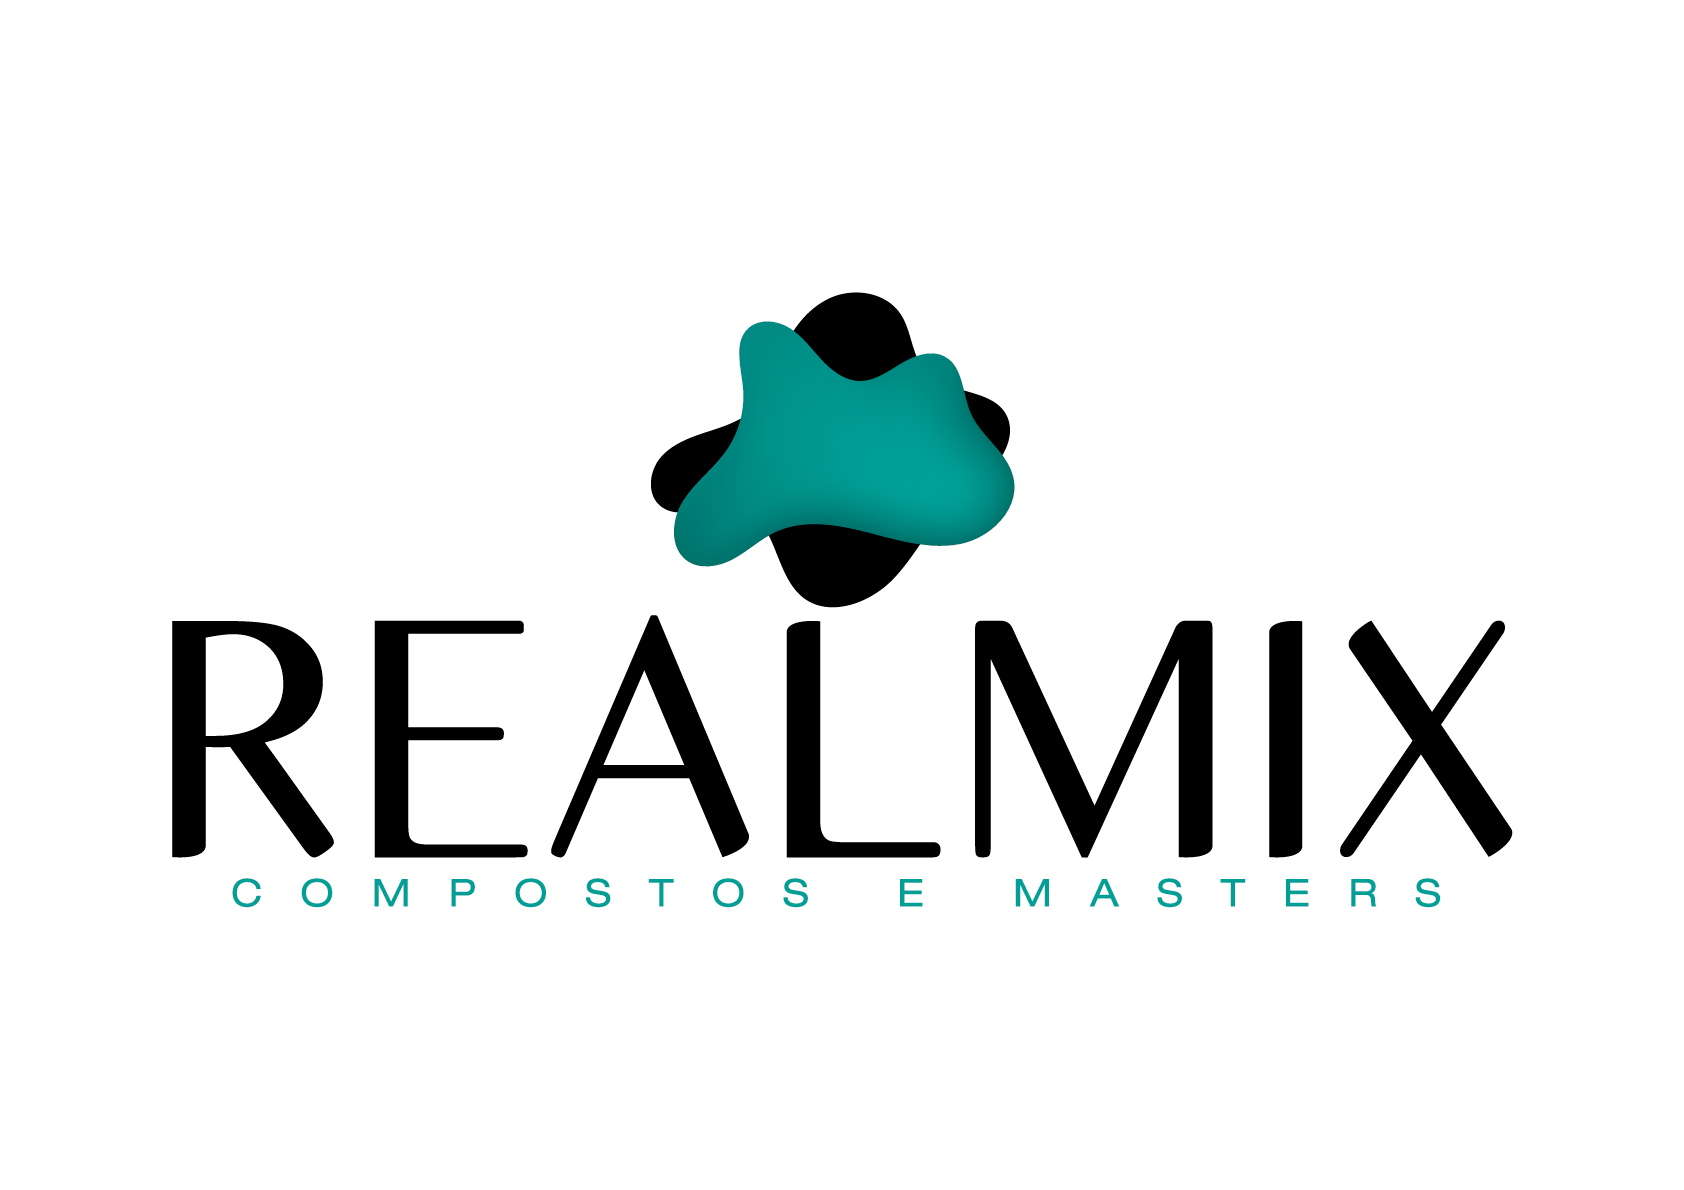 Realmix Compostos e Masters